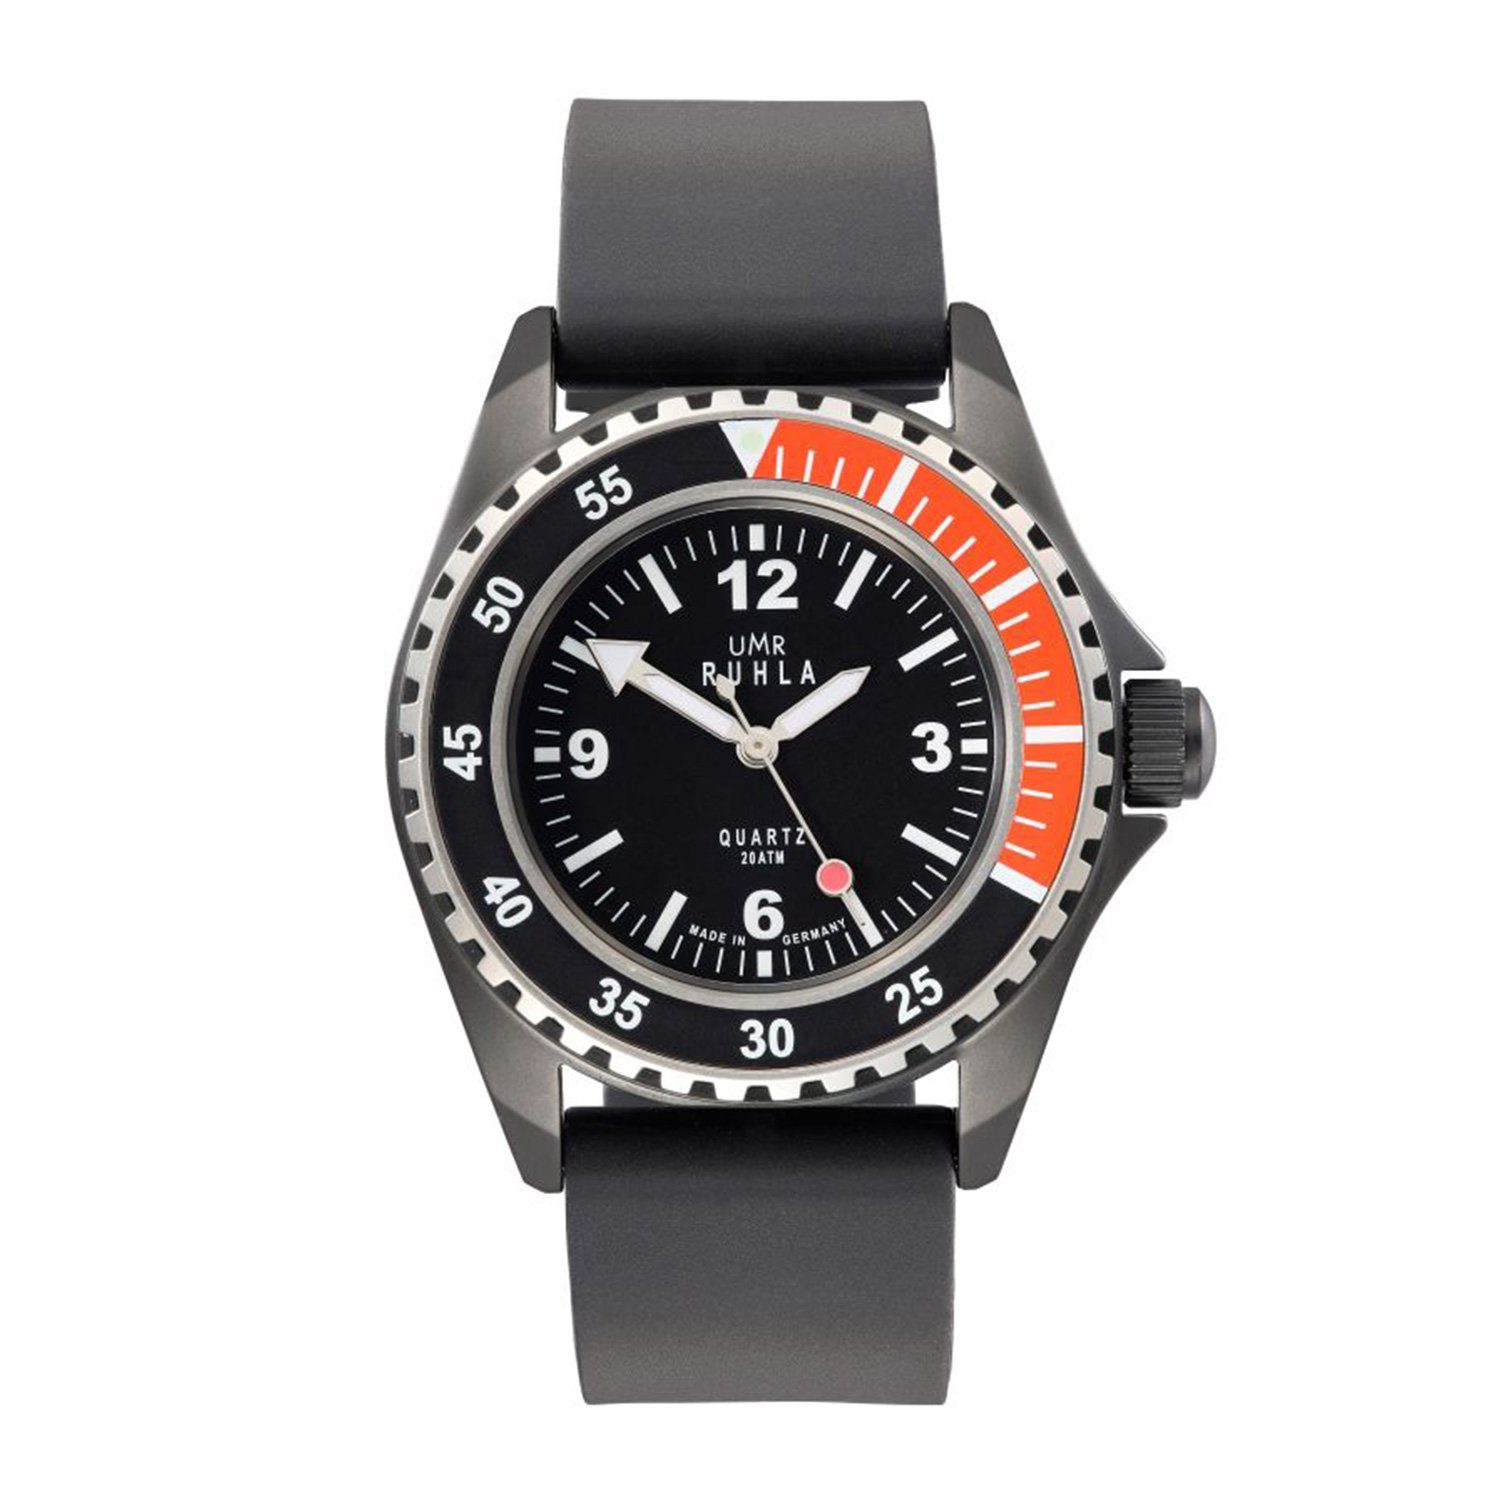 [Sofortige Lieferung und toller Preis] UMR Ruhla Quarzuhr - 13 Kaliber Original-Uhrwerk Manufaktur - Uhren Ruhla Kampfschwimmer-Uhr